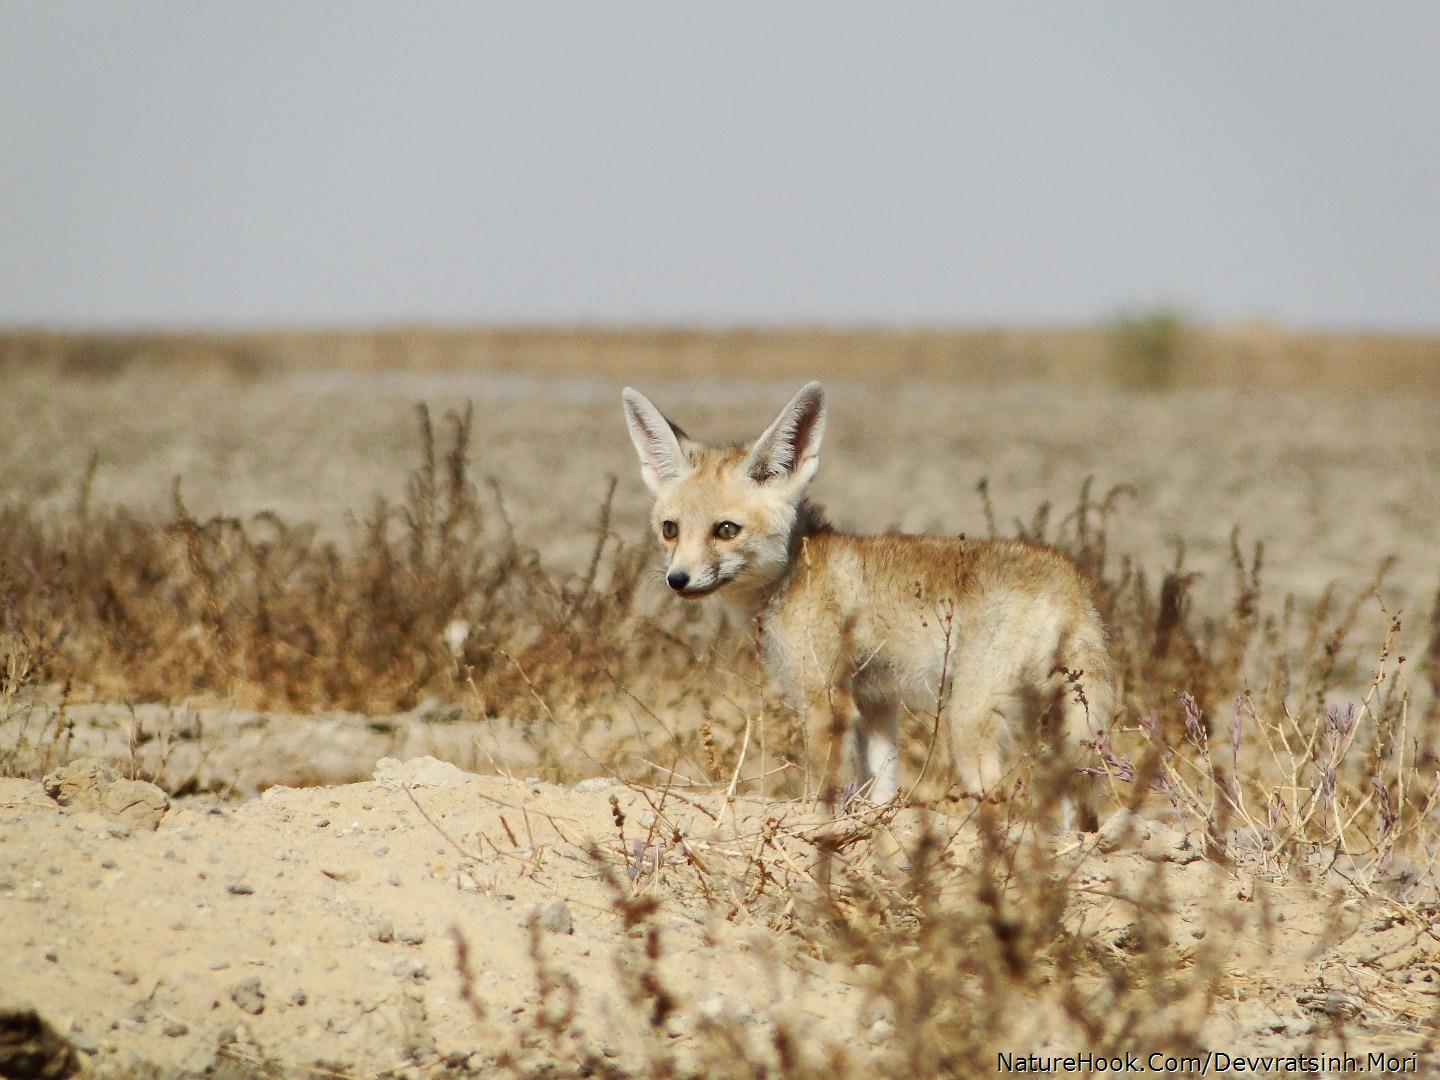 Desert Fox